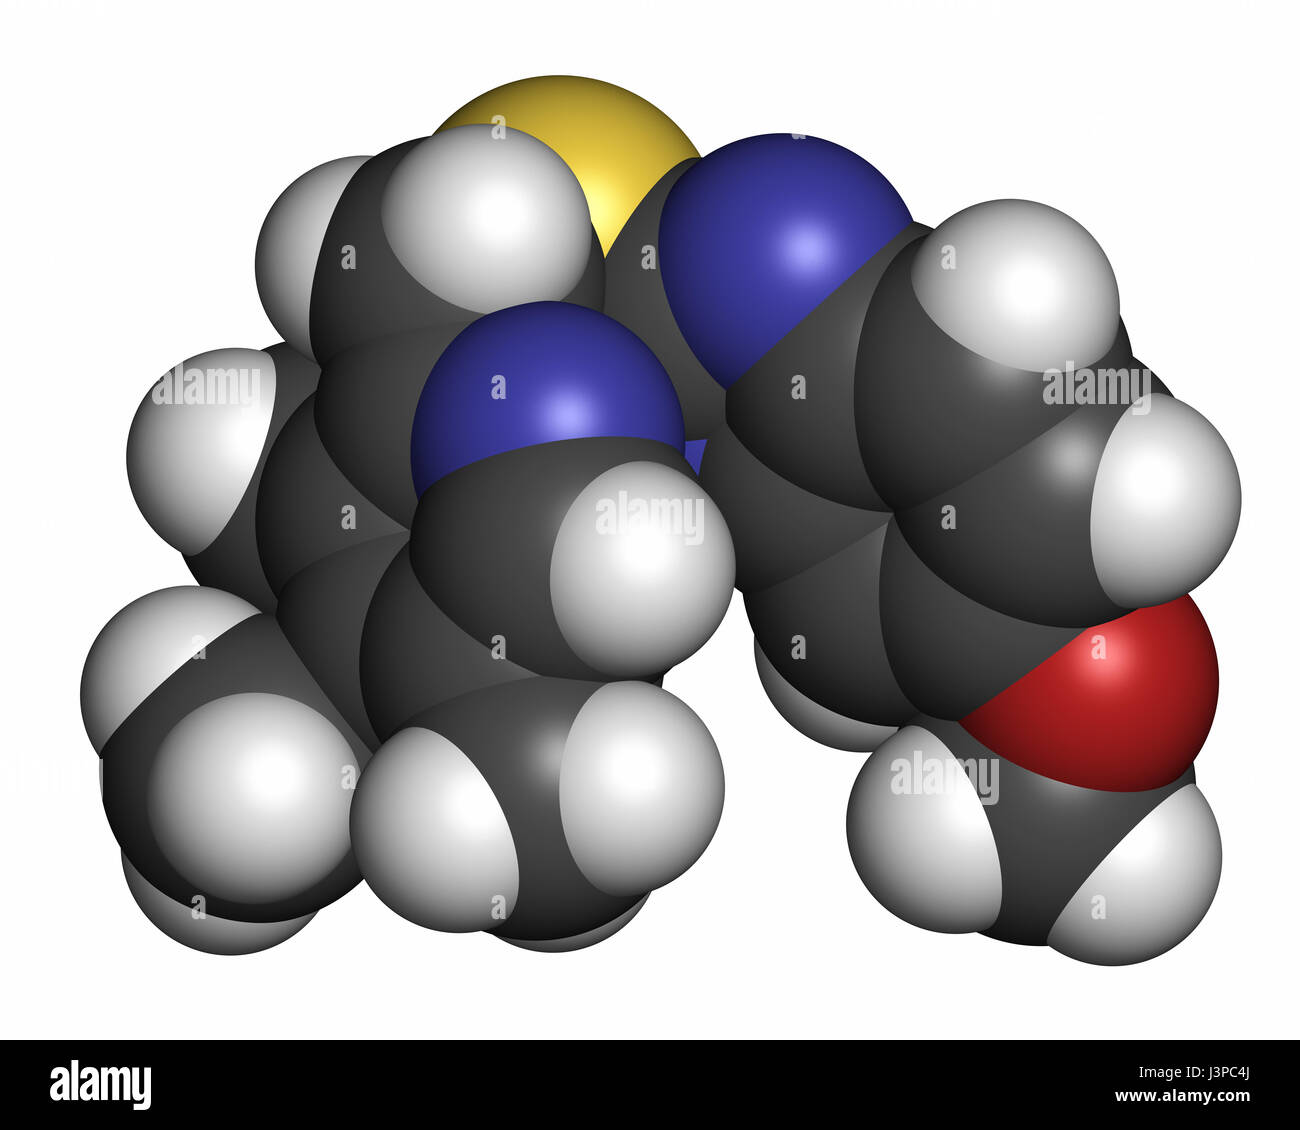 L'esoméprazole, l'ulcère peptique molécule pharmaceutique (inhibiteur de la pompe à protons). Les atomes sont représentés comme des sphères classiques avec codage couleur : blanc (hydrogène), ca Banque D'Images